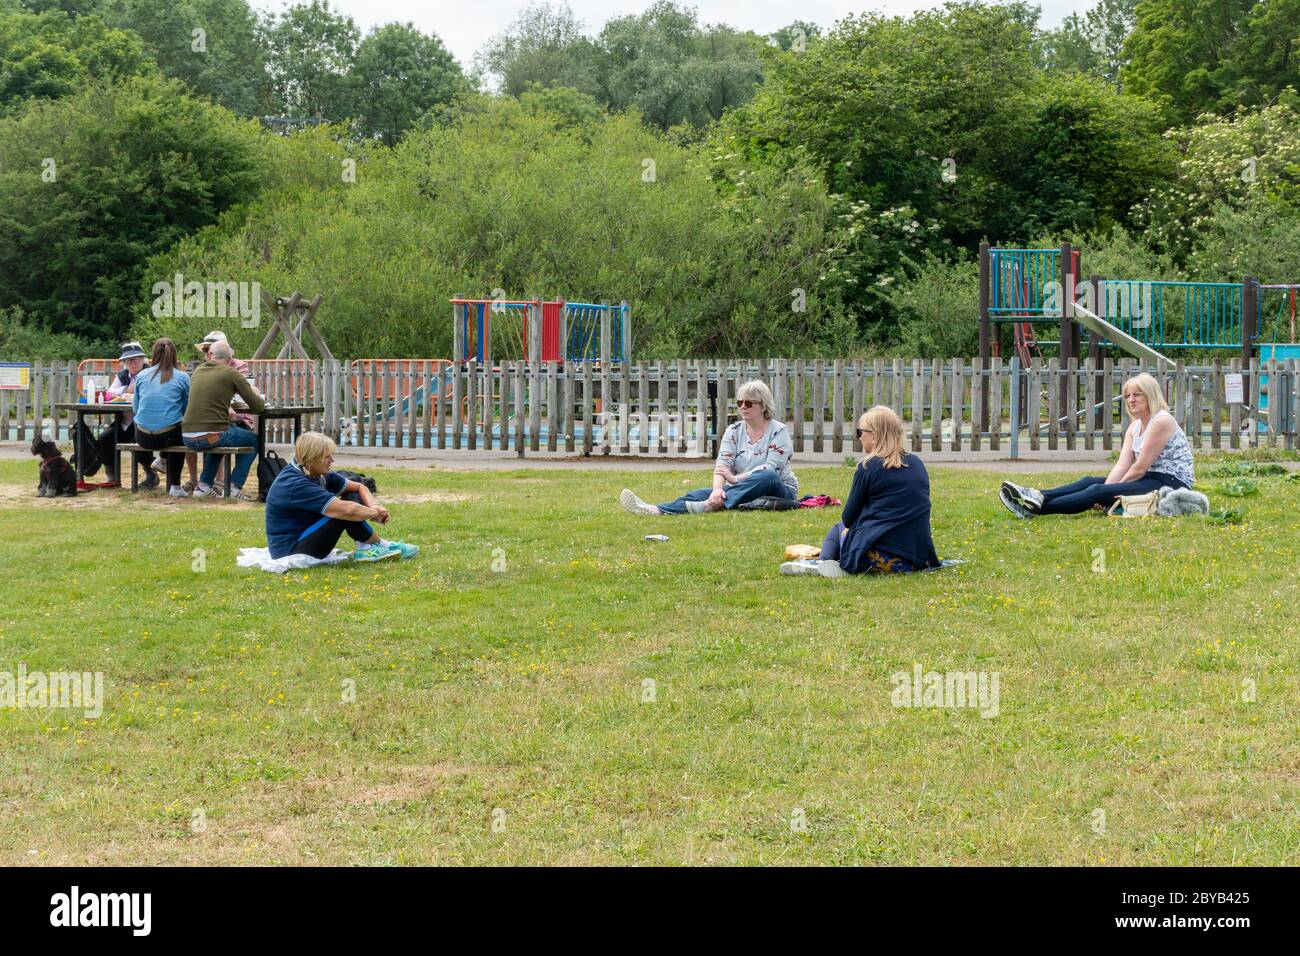 Eine Gruppe von vier Frauen, die in einem Park mit sozialer Distanz sitzen, 2 Meter voneinander entfernt, nachdem die Sperrung des Coronavirus Covid-19 erleichtert wurde, Großbritannien, Juni 2020 Stockfoto